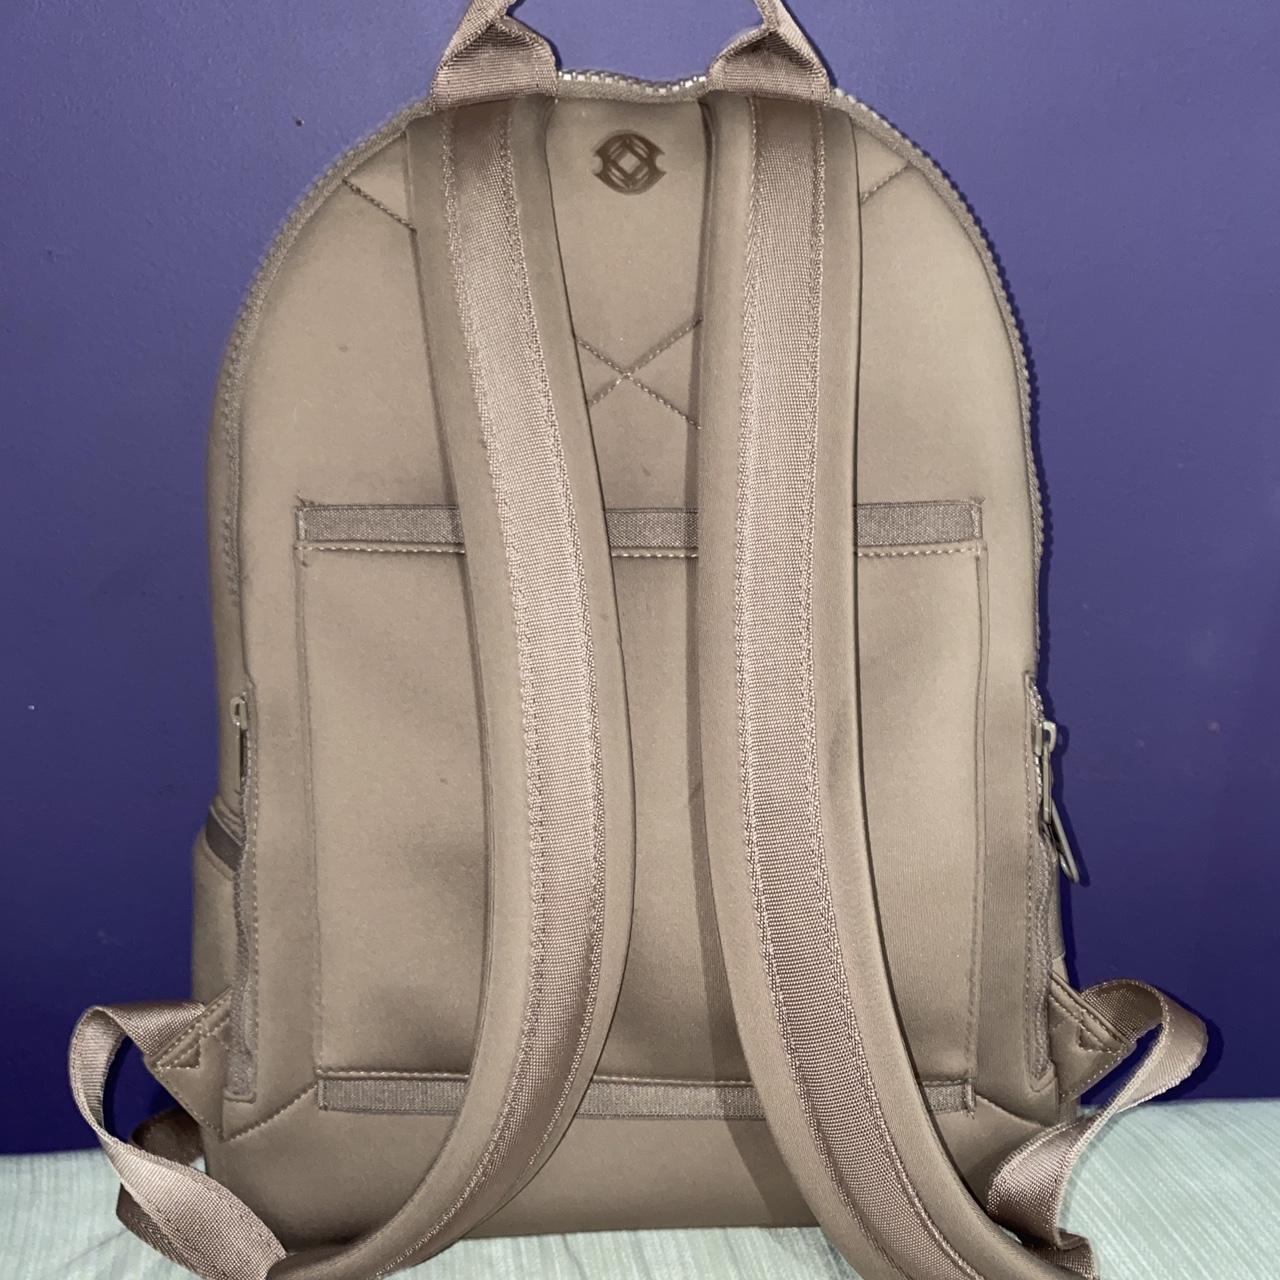 Dagne Dover Dakota neoprene backpack with pouch - Depop